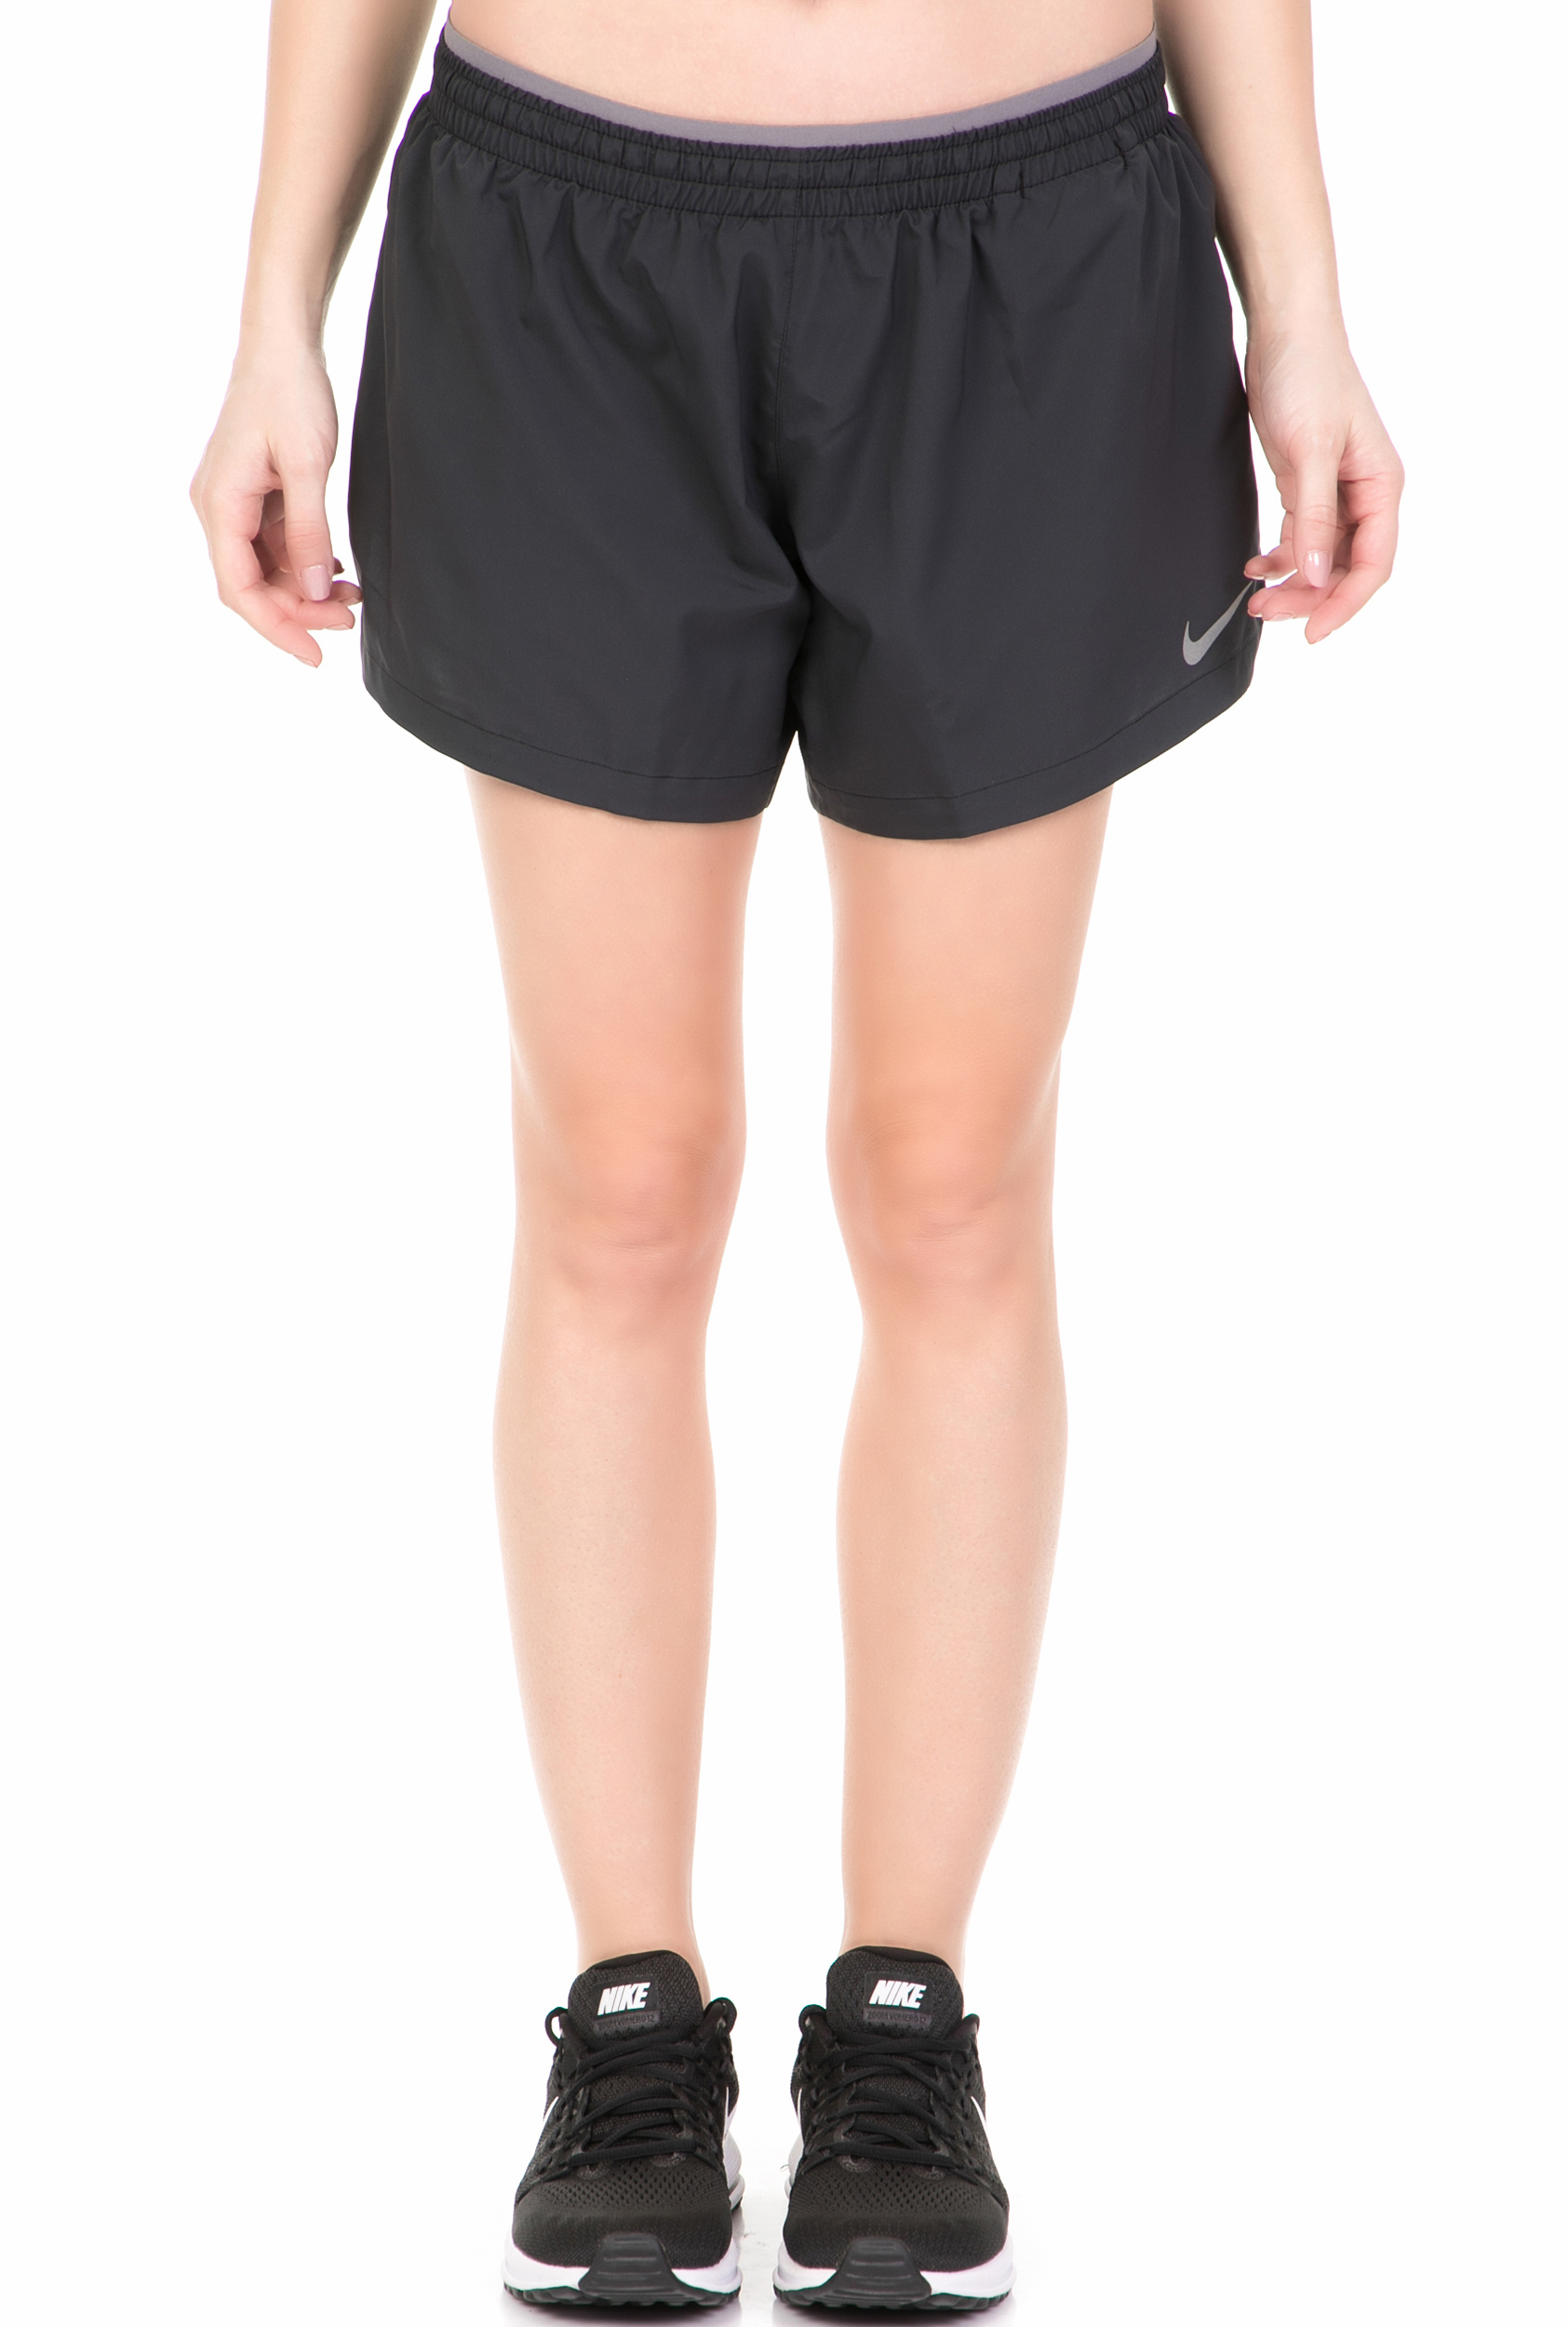 Γυναικεία/Ρούχα/Σορτς-Βερμούδες/Αθλητικά NIKE - Γυναικείο σορτς για τρέξιμο Nike Elevate 5IN μαύρο